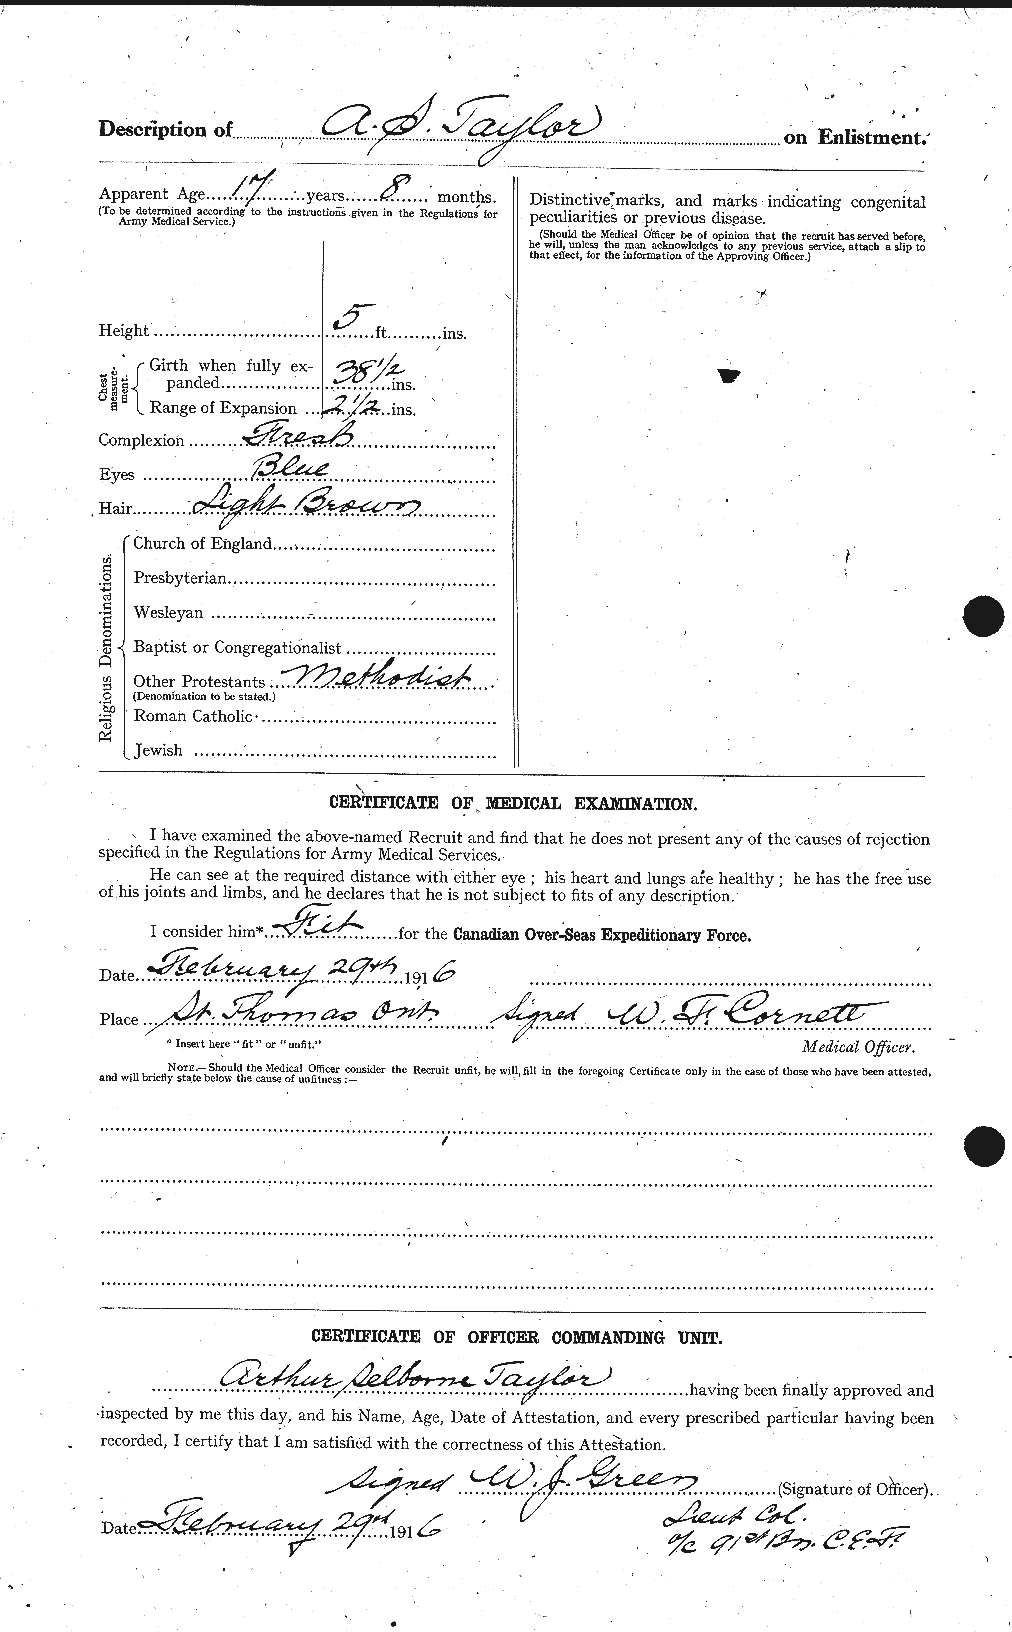 Dossiers du Personnel de la Première Guerre mondiale - CEC 626744b